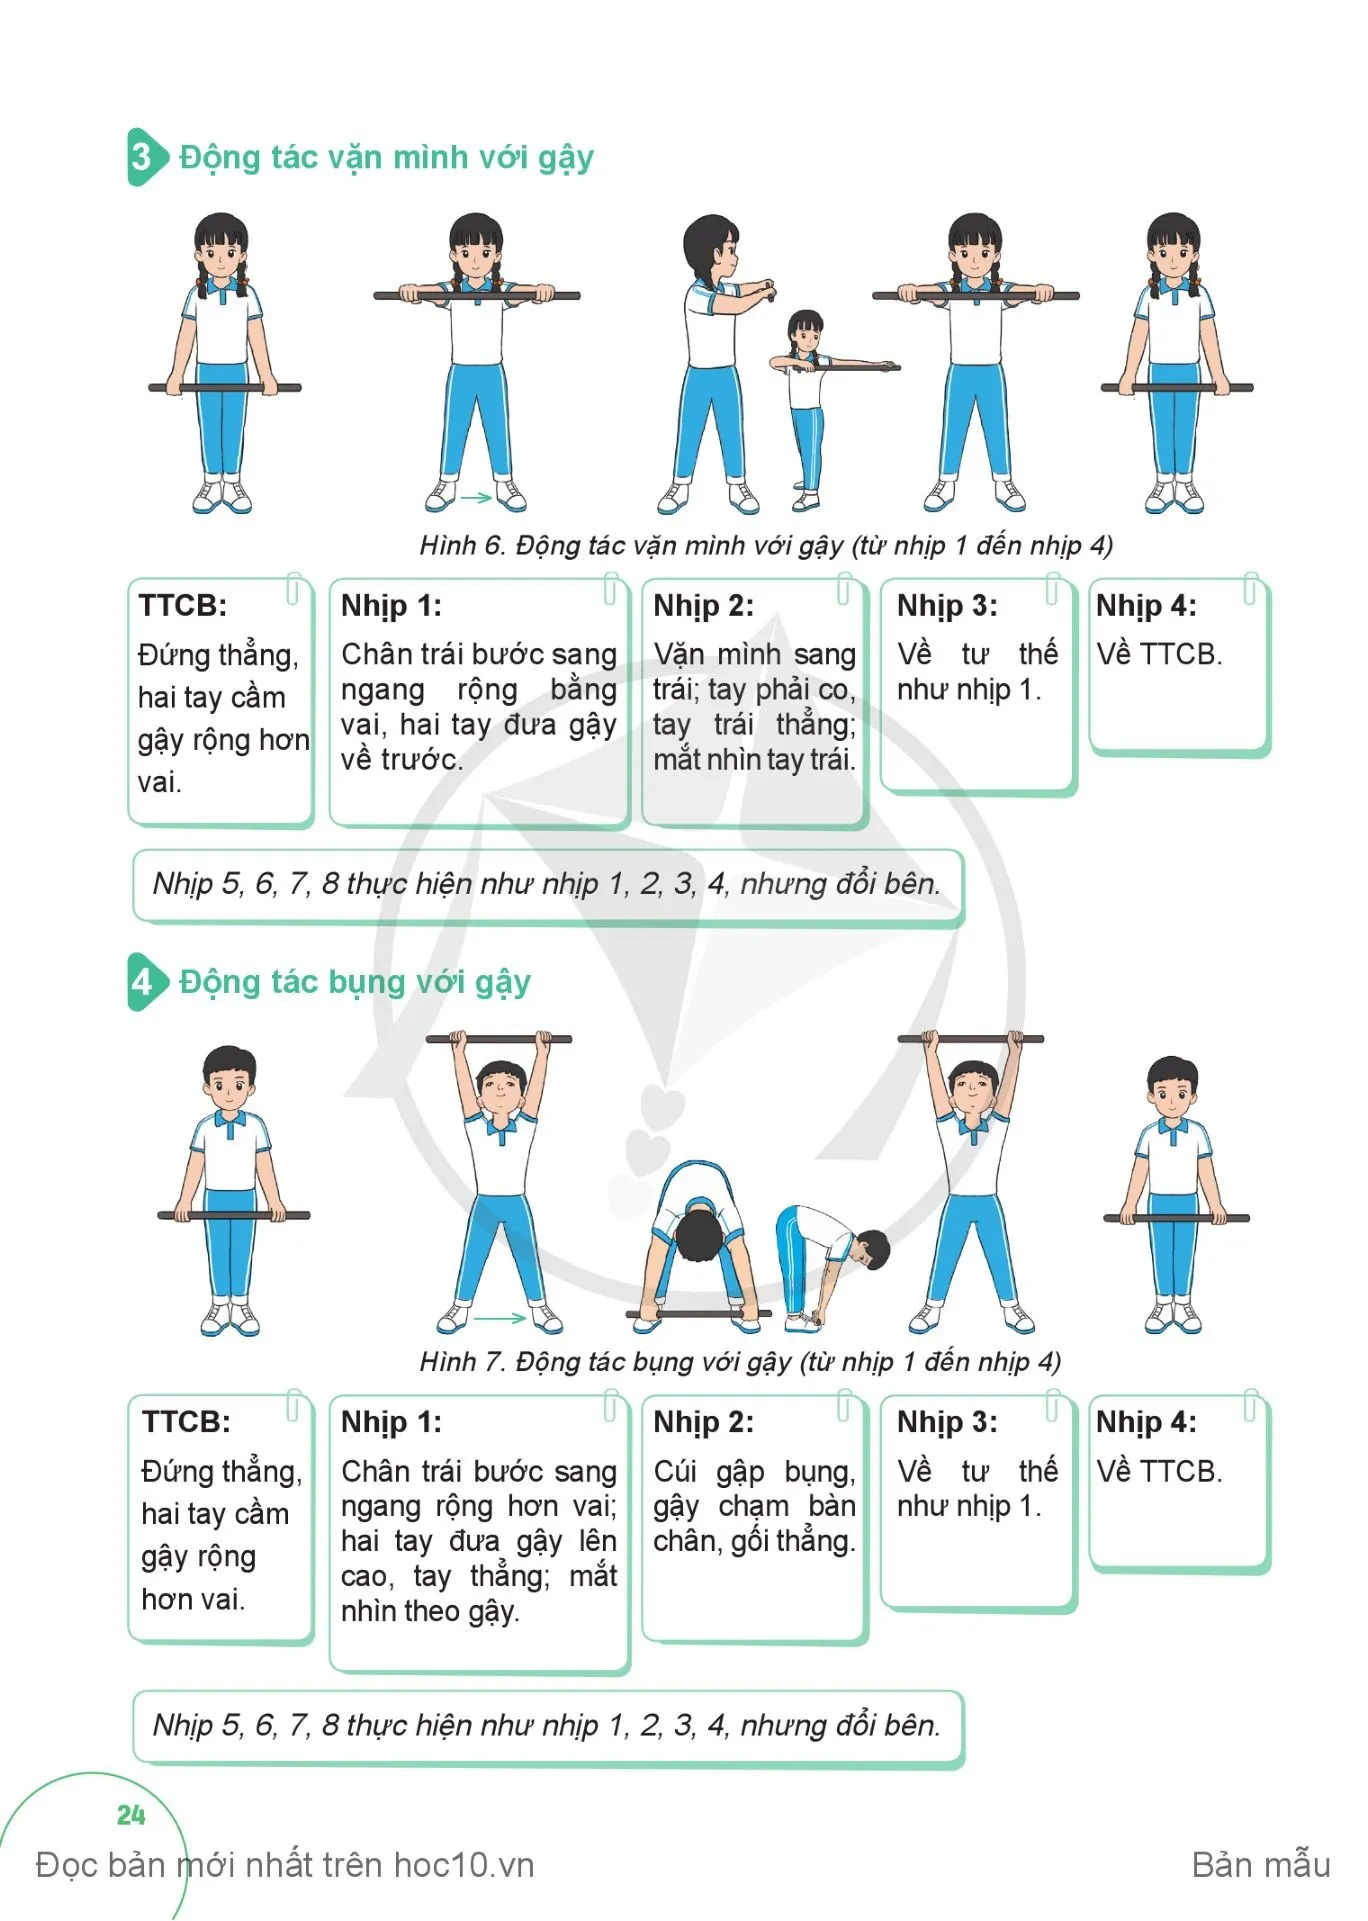 Bài 1. Động tác vươn thở, động tác lườn, động tác vặn mình và động tác bụng với gậy